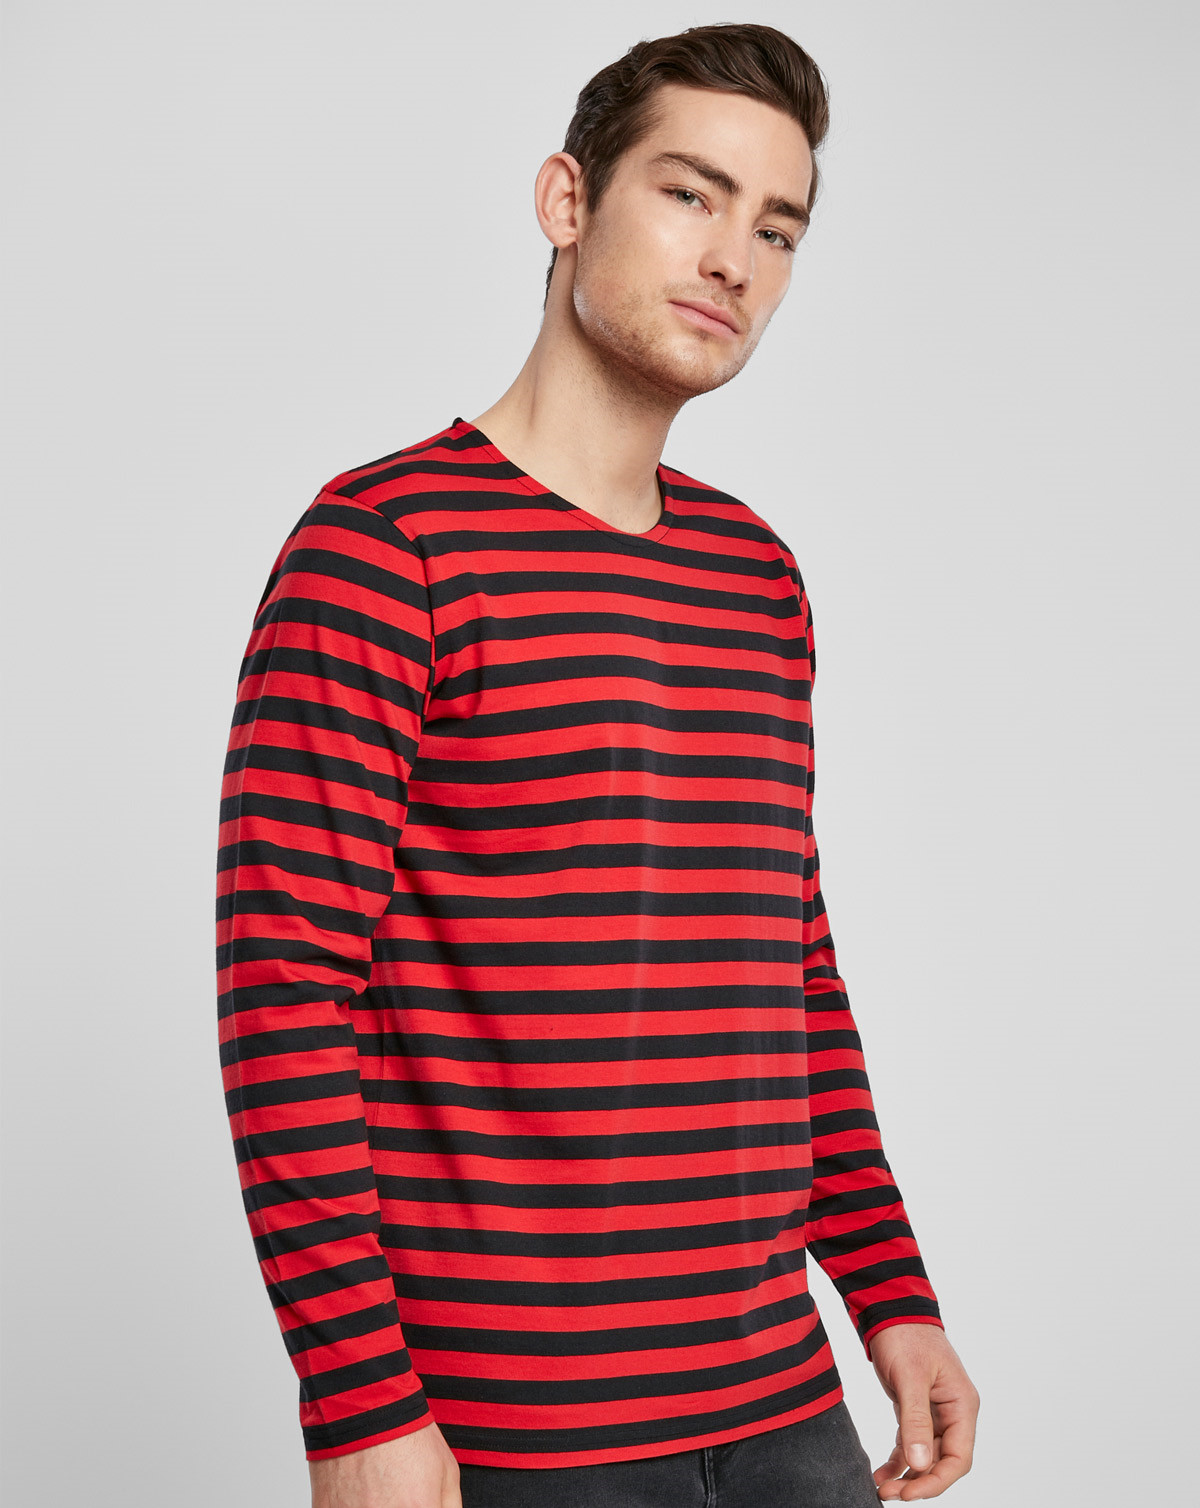 #3 - Urban Classics Regular StripeLong Sleeve T-Shirt (Fire Red / Black, XL)